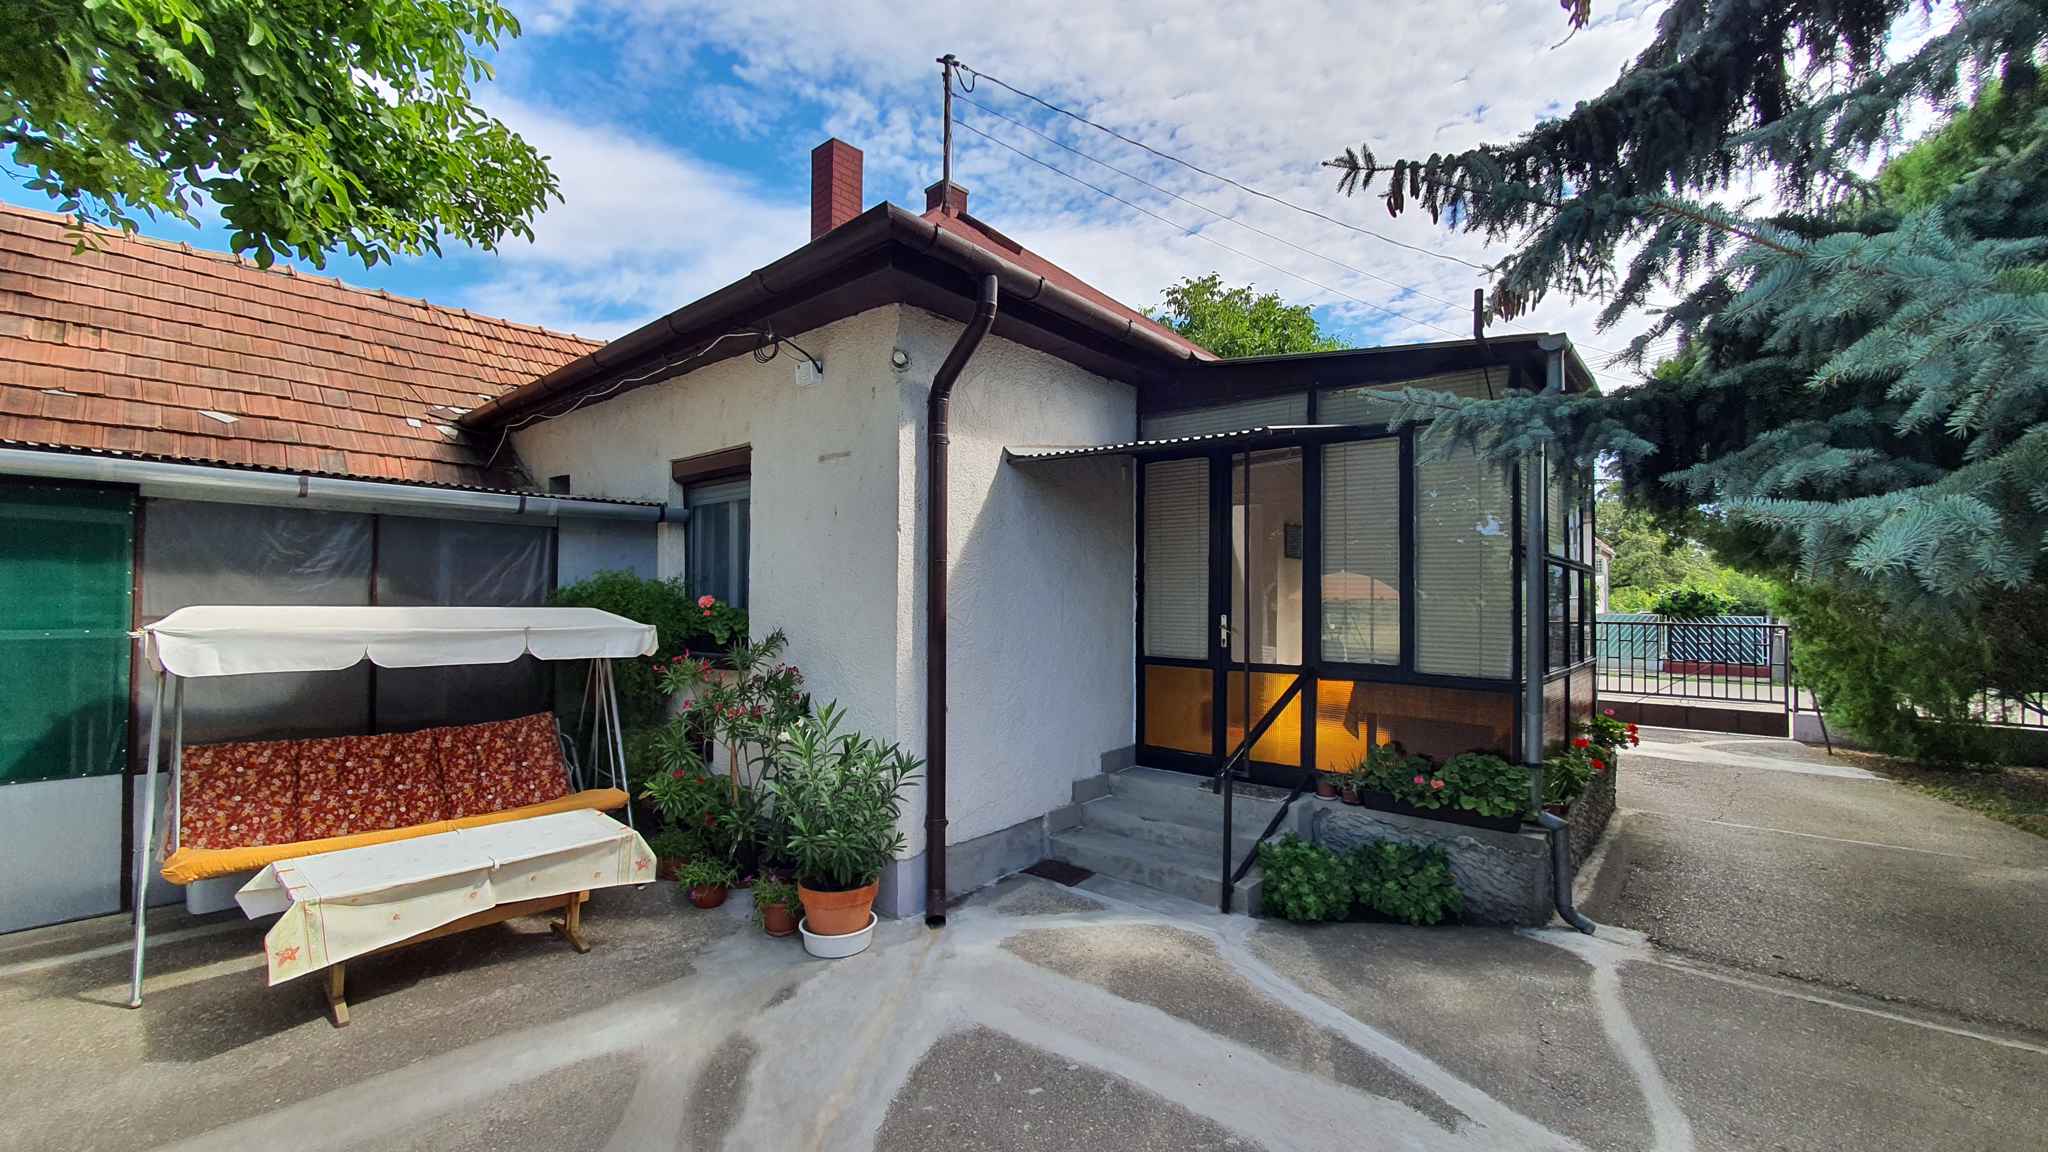 Ferienhaus mit Garten und WLAN im Haus Ferienhaus in Ungarn